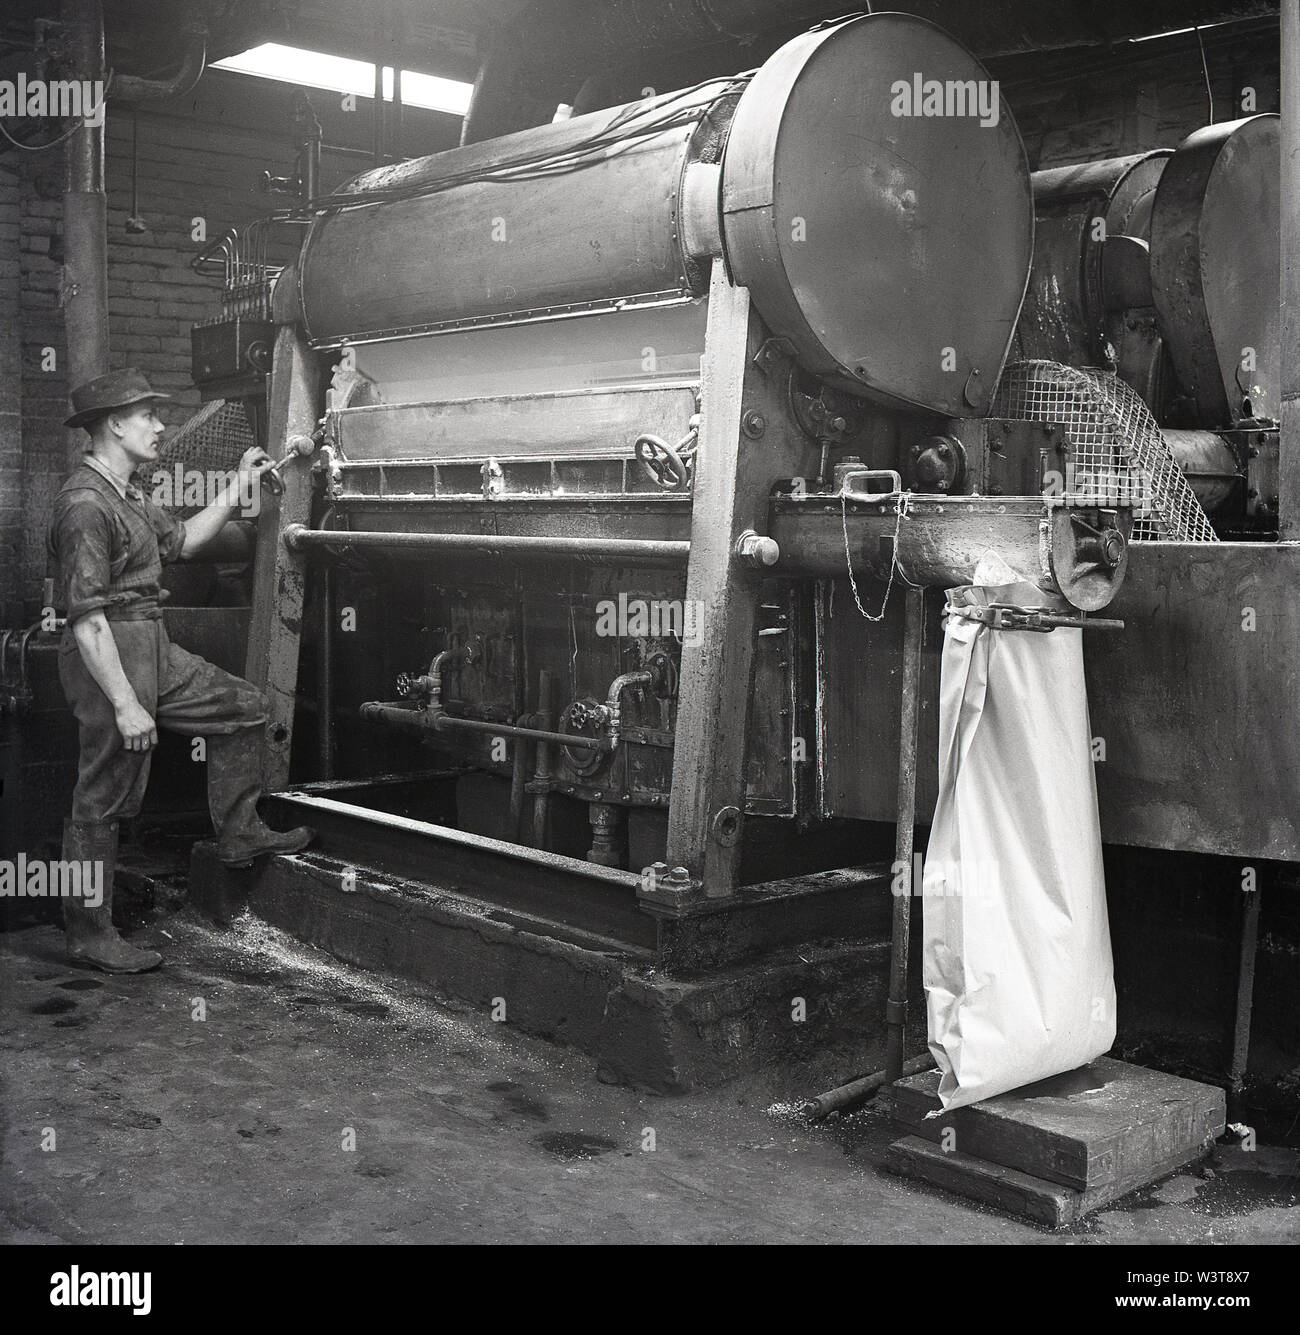 1950, historische, männliche operativen Arbeiten an Maschinen in einer Fabrik, zu der Batterie stets bereit, Forest Road, Walthamstow, London, England, UK. Stockfoto